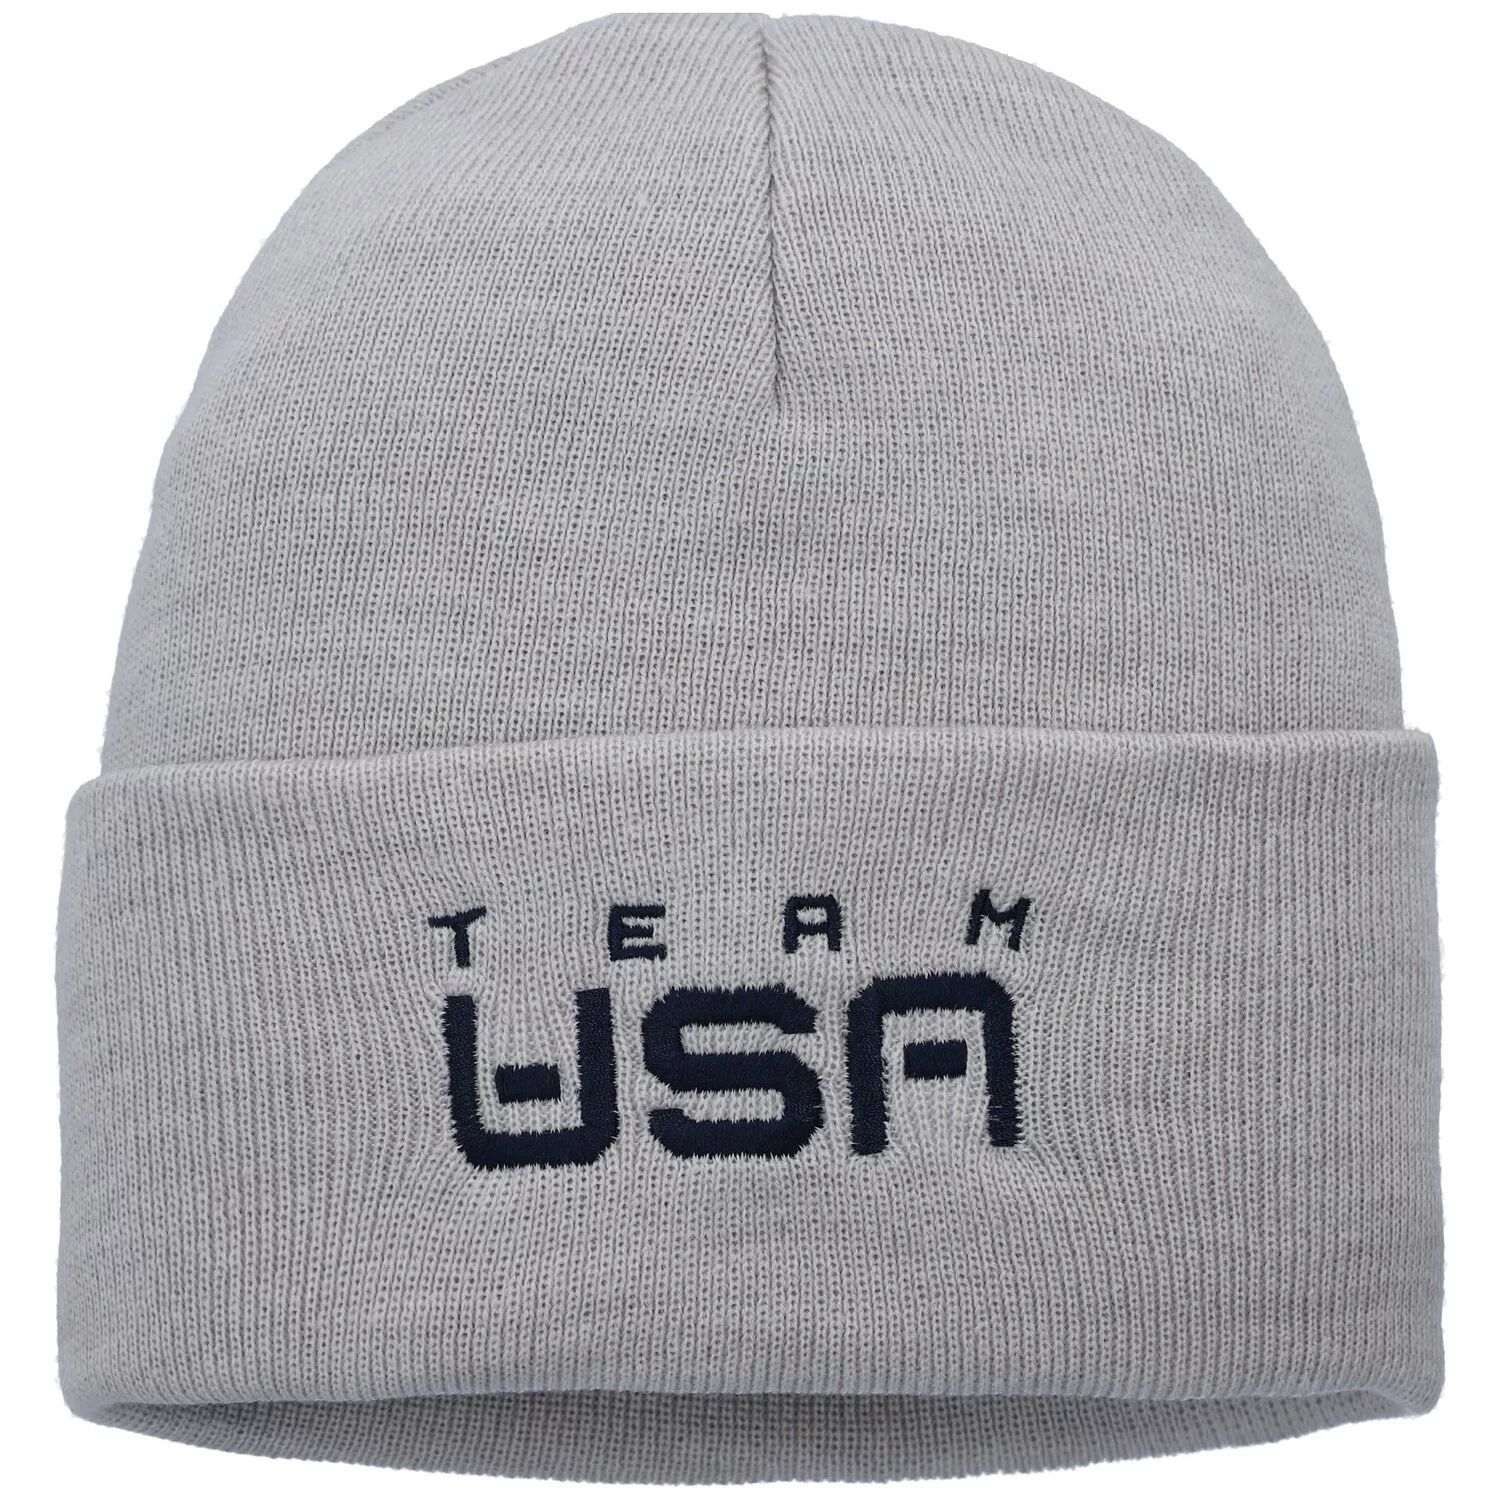 Мужская серая вязаная шапка с манжетами Nike Heathered Team USA